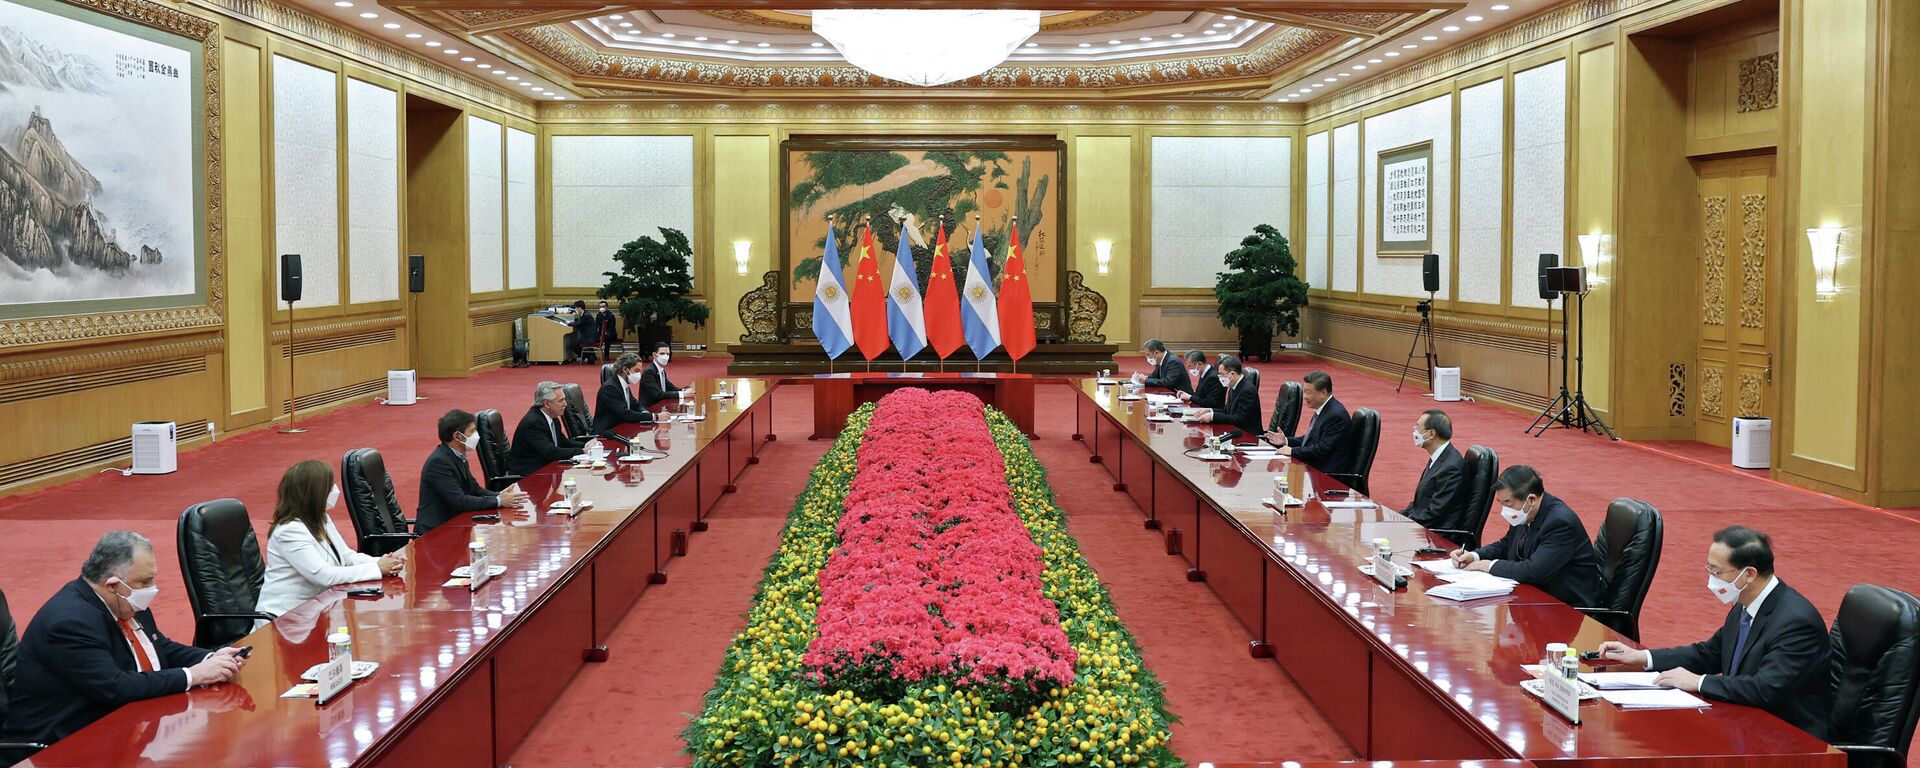 Reunión entre el presidente argentino Alberto Fernández y su homólogo chino Xi Jinping  - Sputnik Mundo, 1920, 11.02.2022